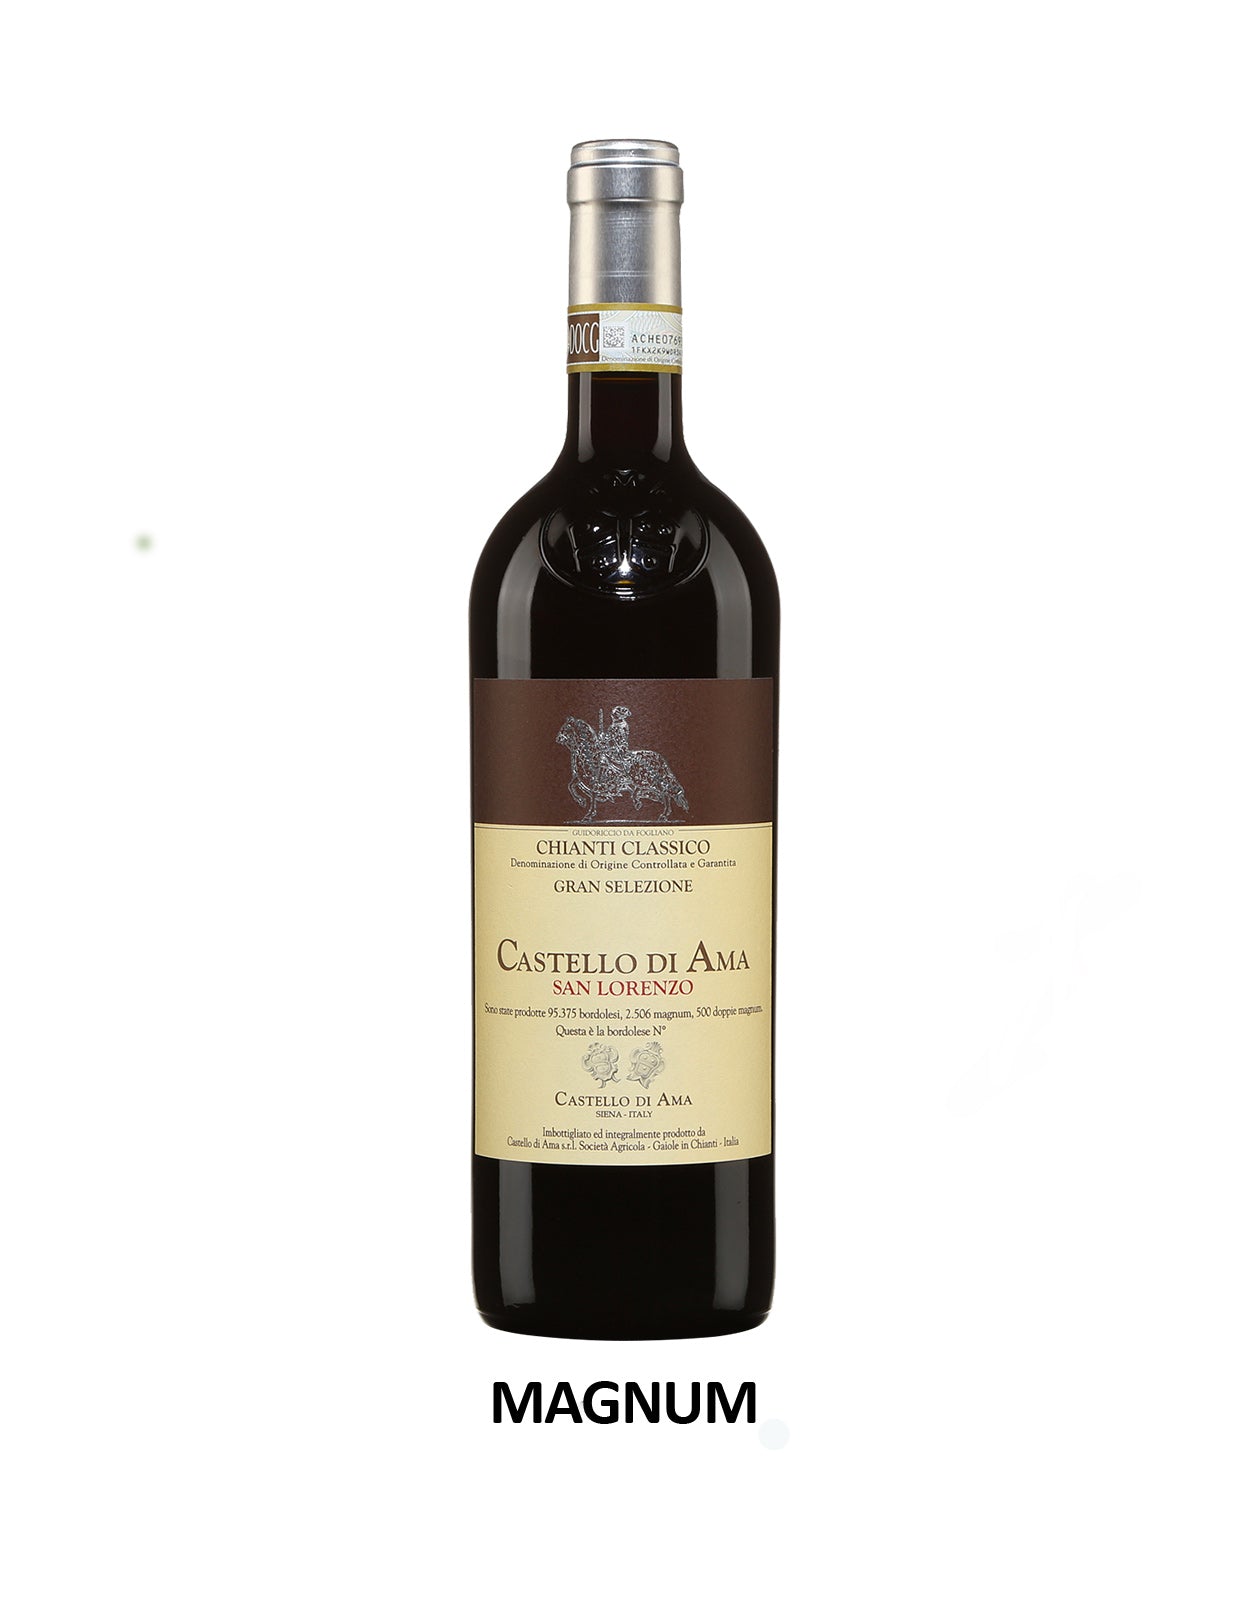 Castello di Ama Chianti Classico Gran Selezione San Lorenzo 2018  - 1.5 Litre Bottle